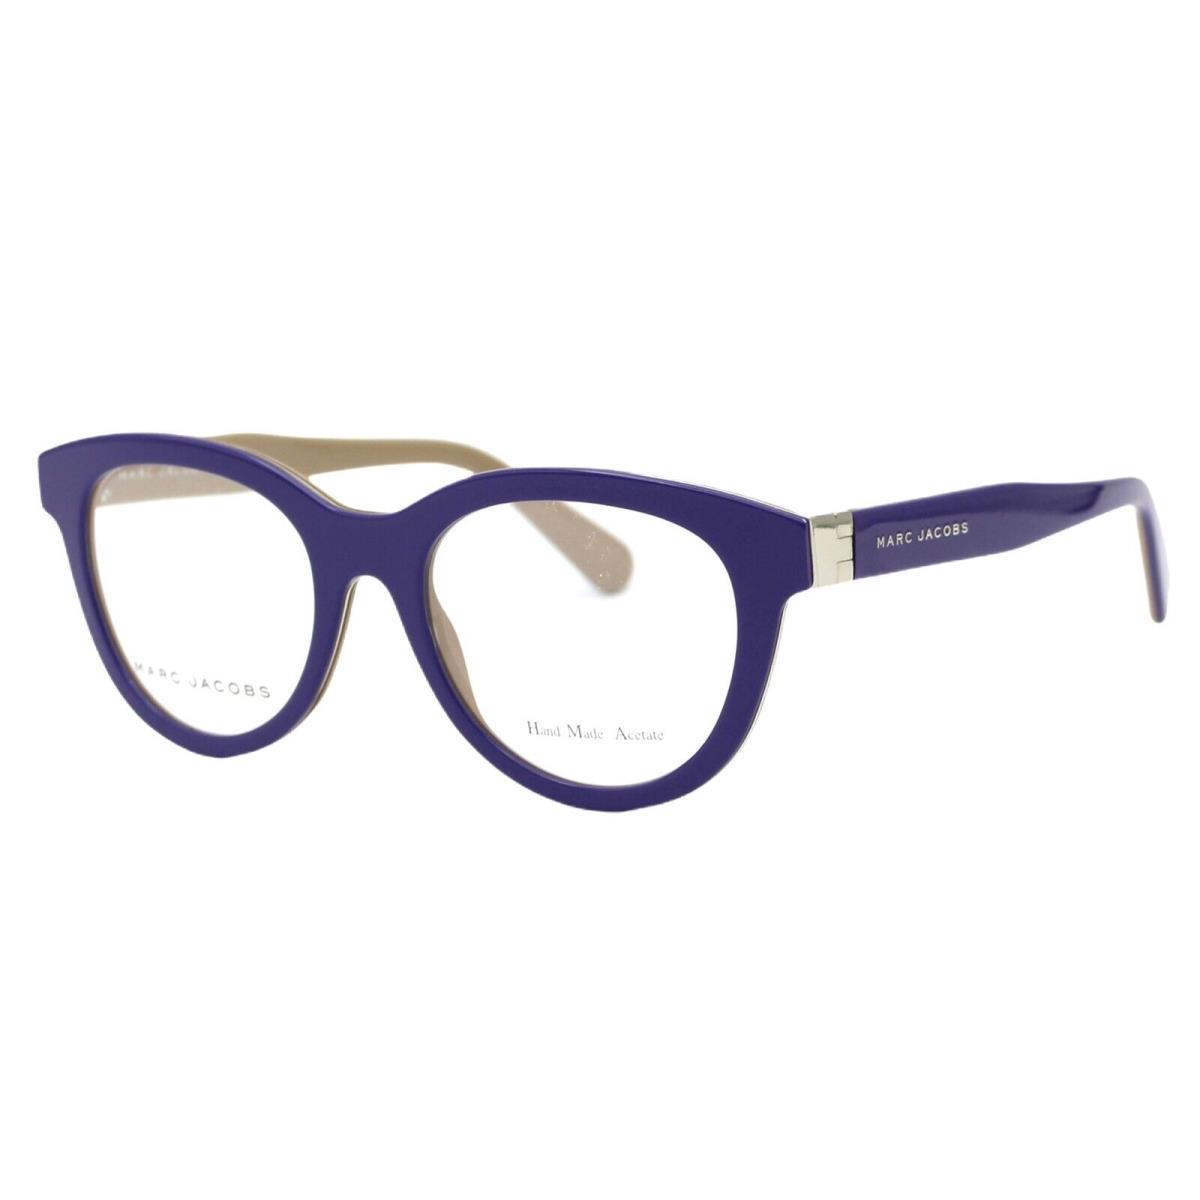 Marc Jacobs MJ 571 Lgb Violet Beige Women s Plastic Eyeglasses 50-19-140 W/case - Frame: Violet Beige